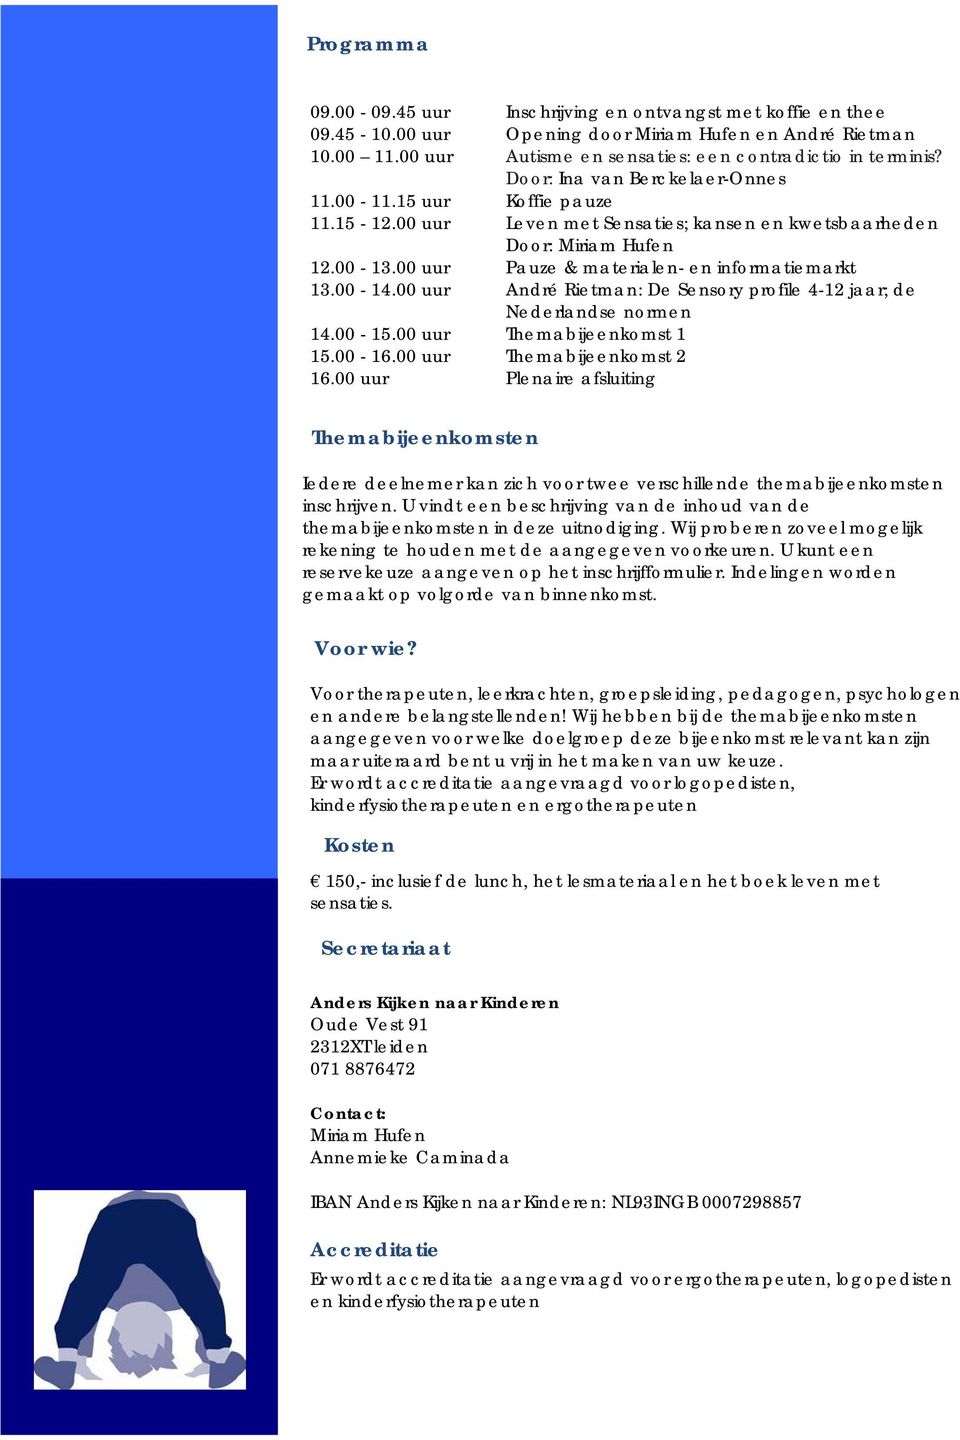 00-14.00 uur André Rietman: De Sensory profile 4-12 jaar; de Nederlandse normen 14.00-15.00 uur Themabijeenkomst 1 15.00-16.00 uur Themabijeenkomst 2 16.